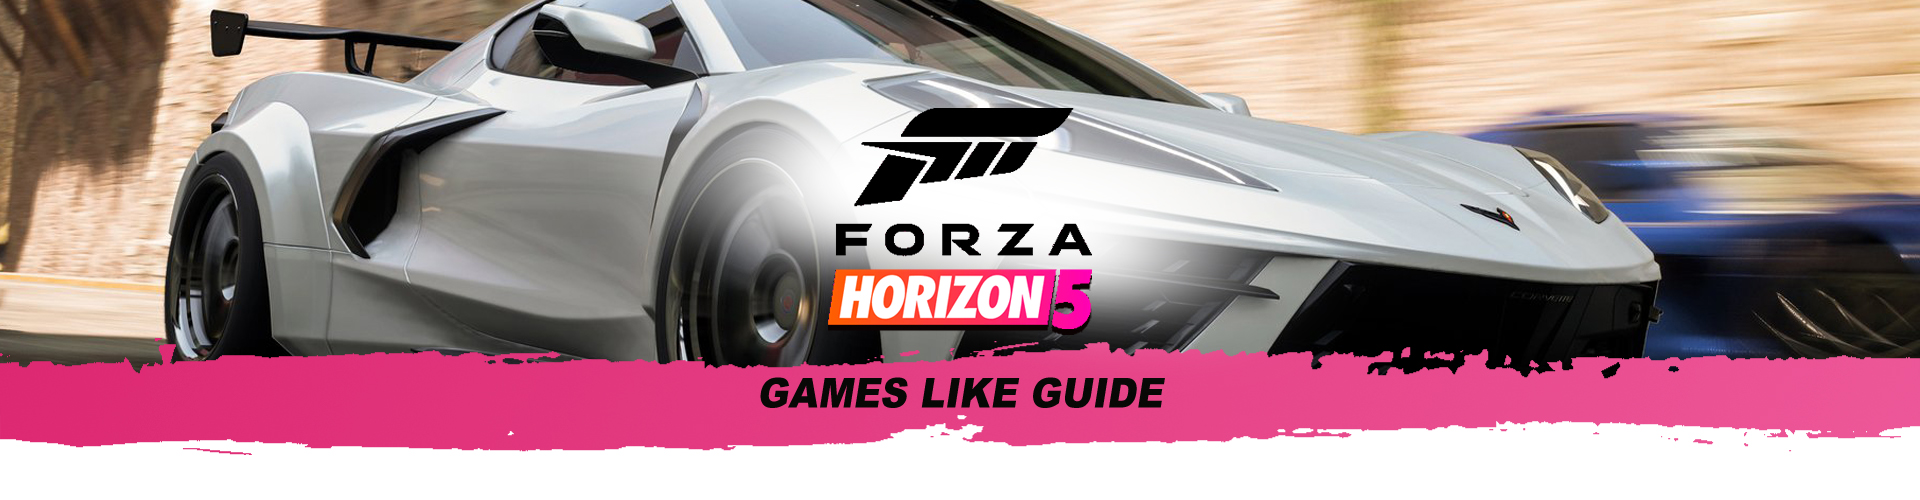 Top 15 de juegos como Forza Horizon